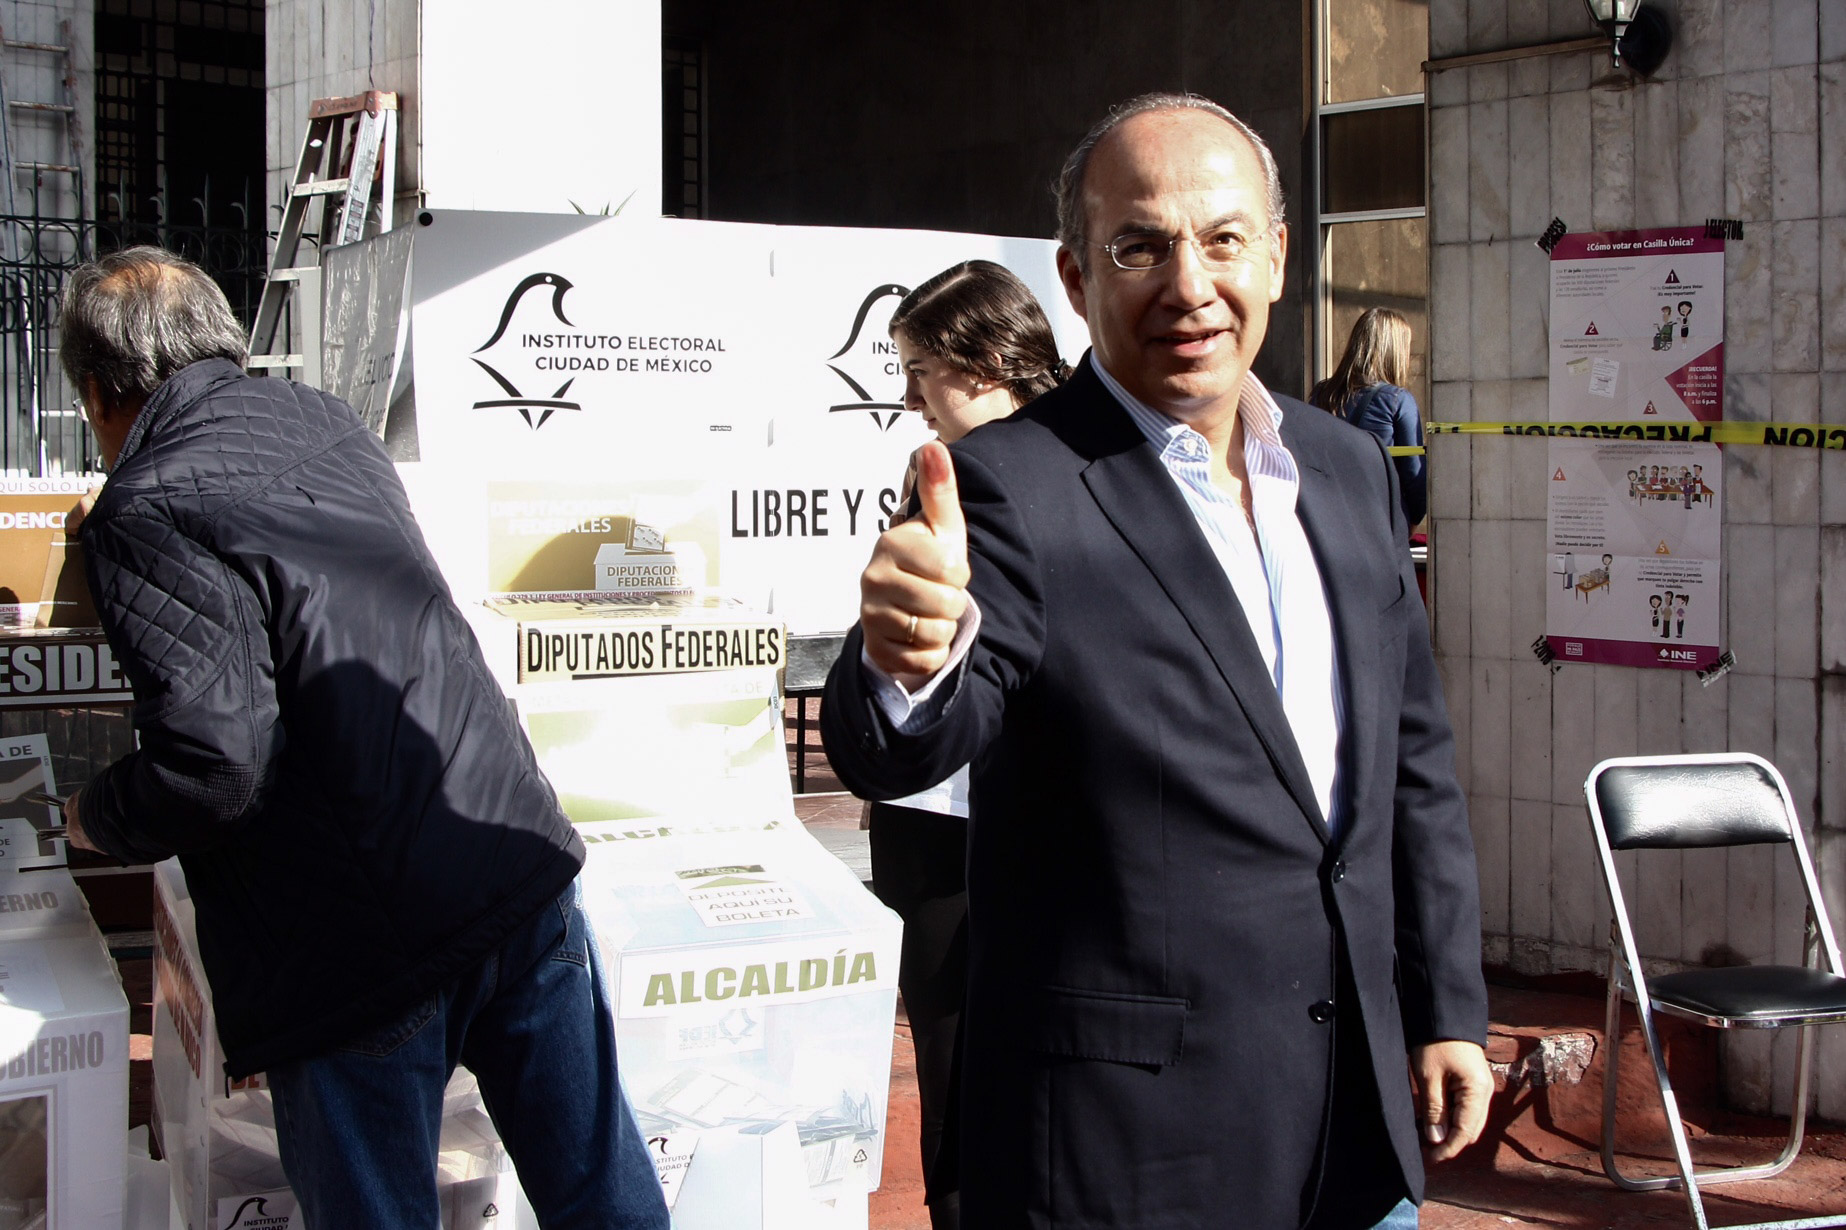 El nuevo partido de Felipe Calderón puede ser “un peligro para México”